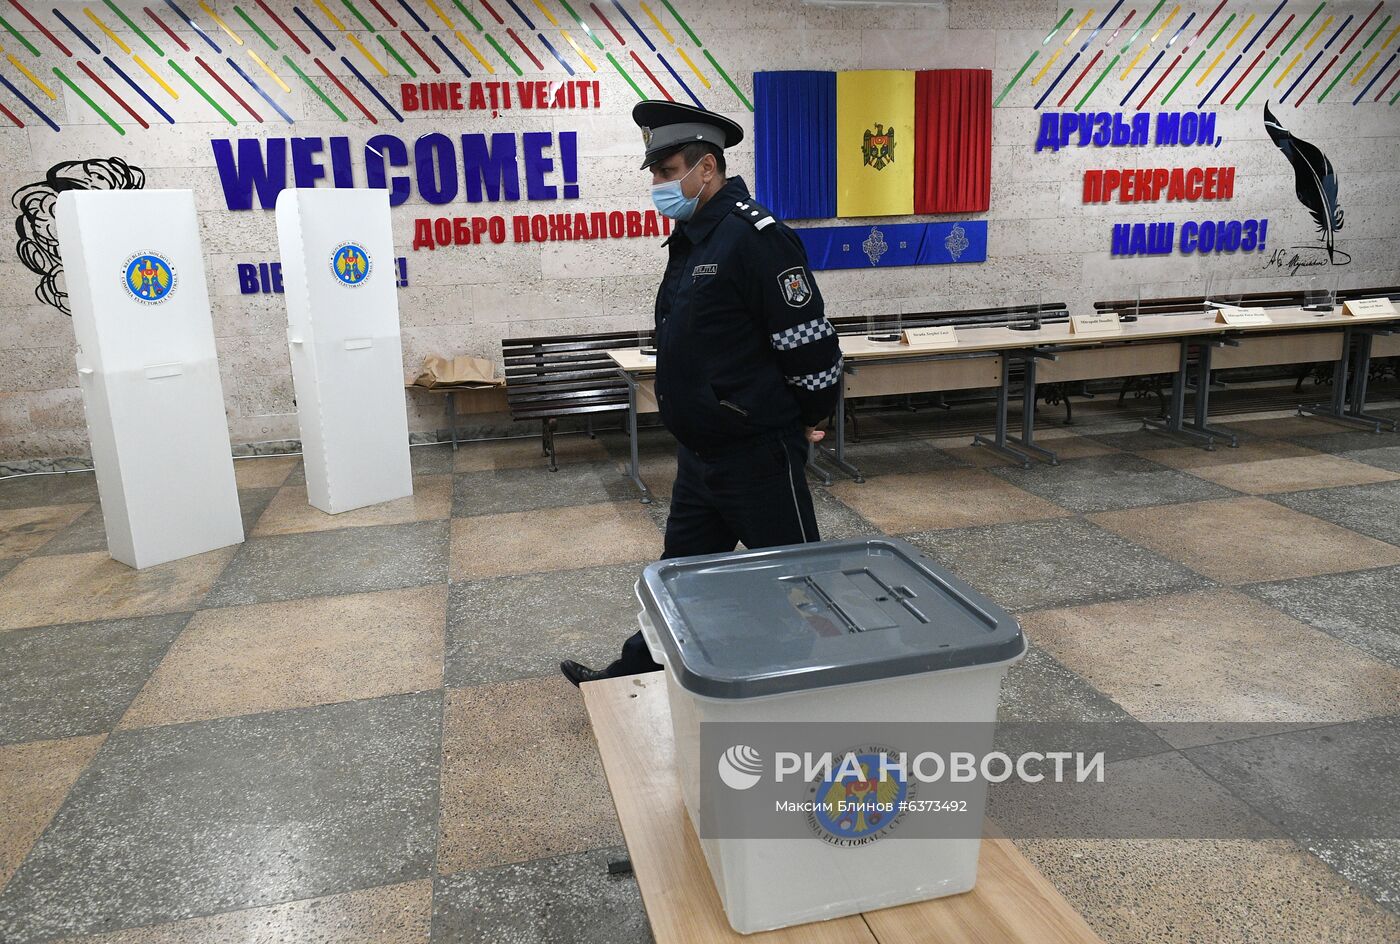 Подготовка к президентским выборам в Молдавии